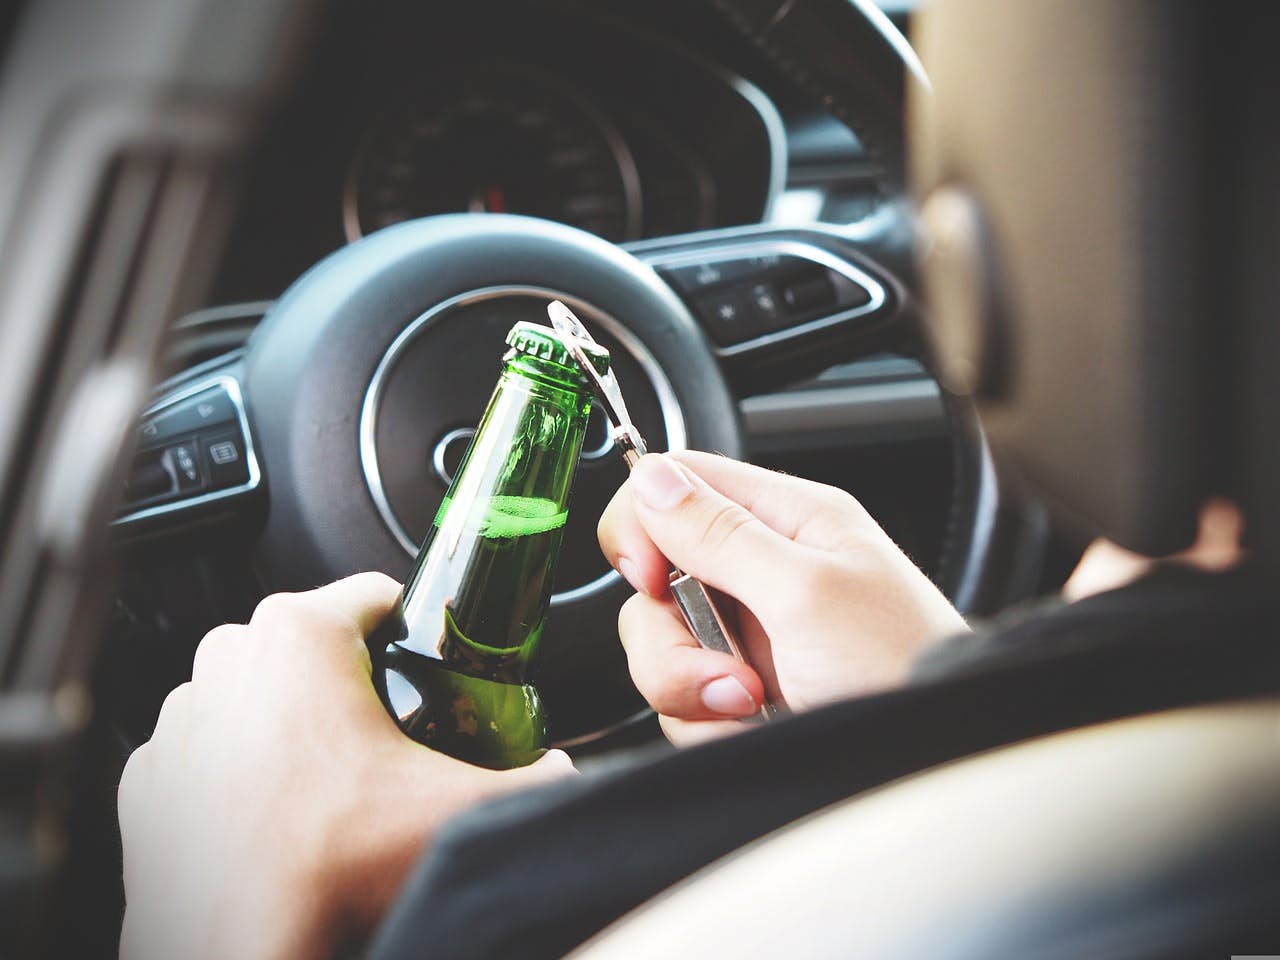 Zhabanie auta za alkohol vo vyspelých krajinách: Bežná vec a funguje už roky